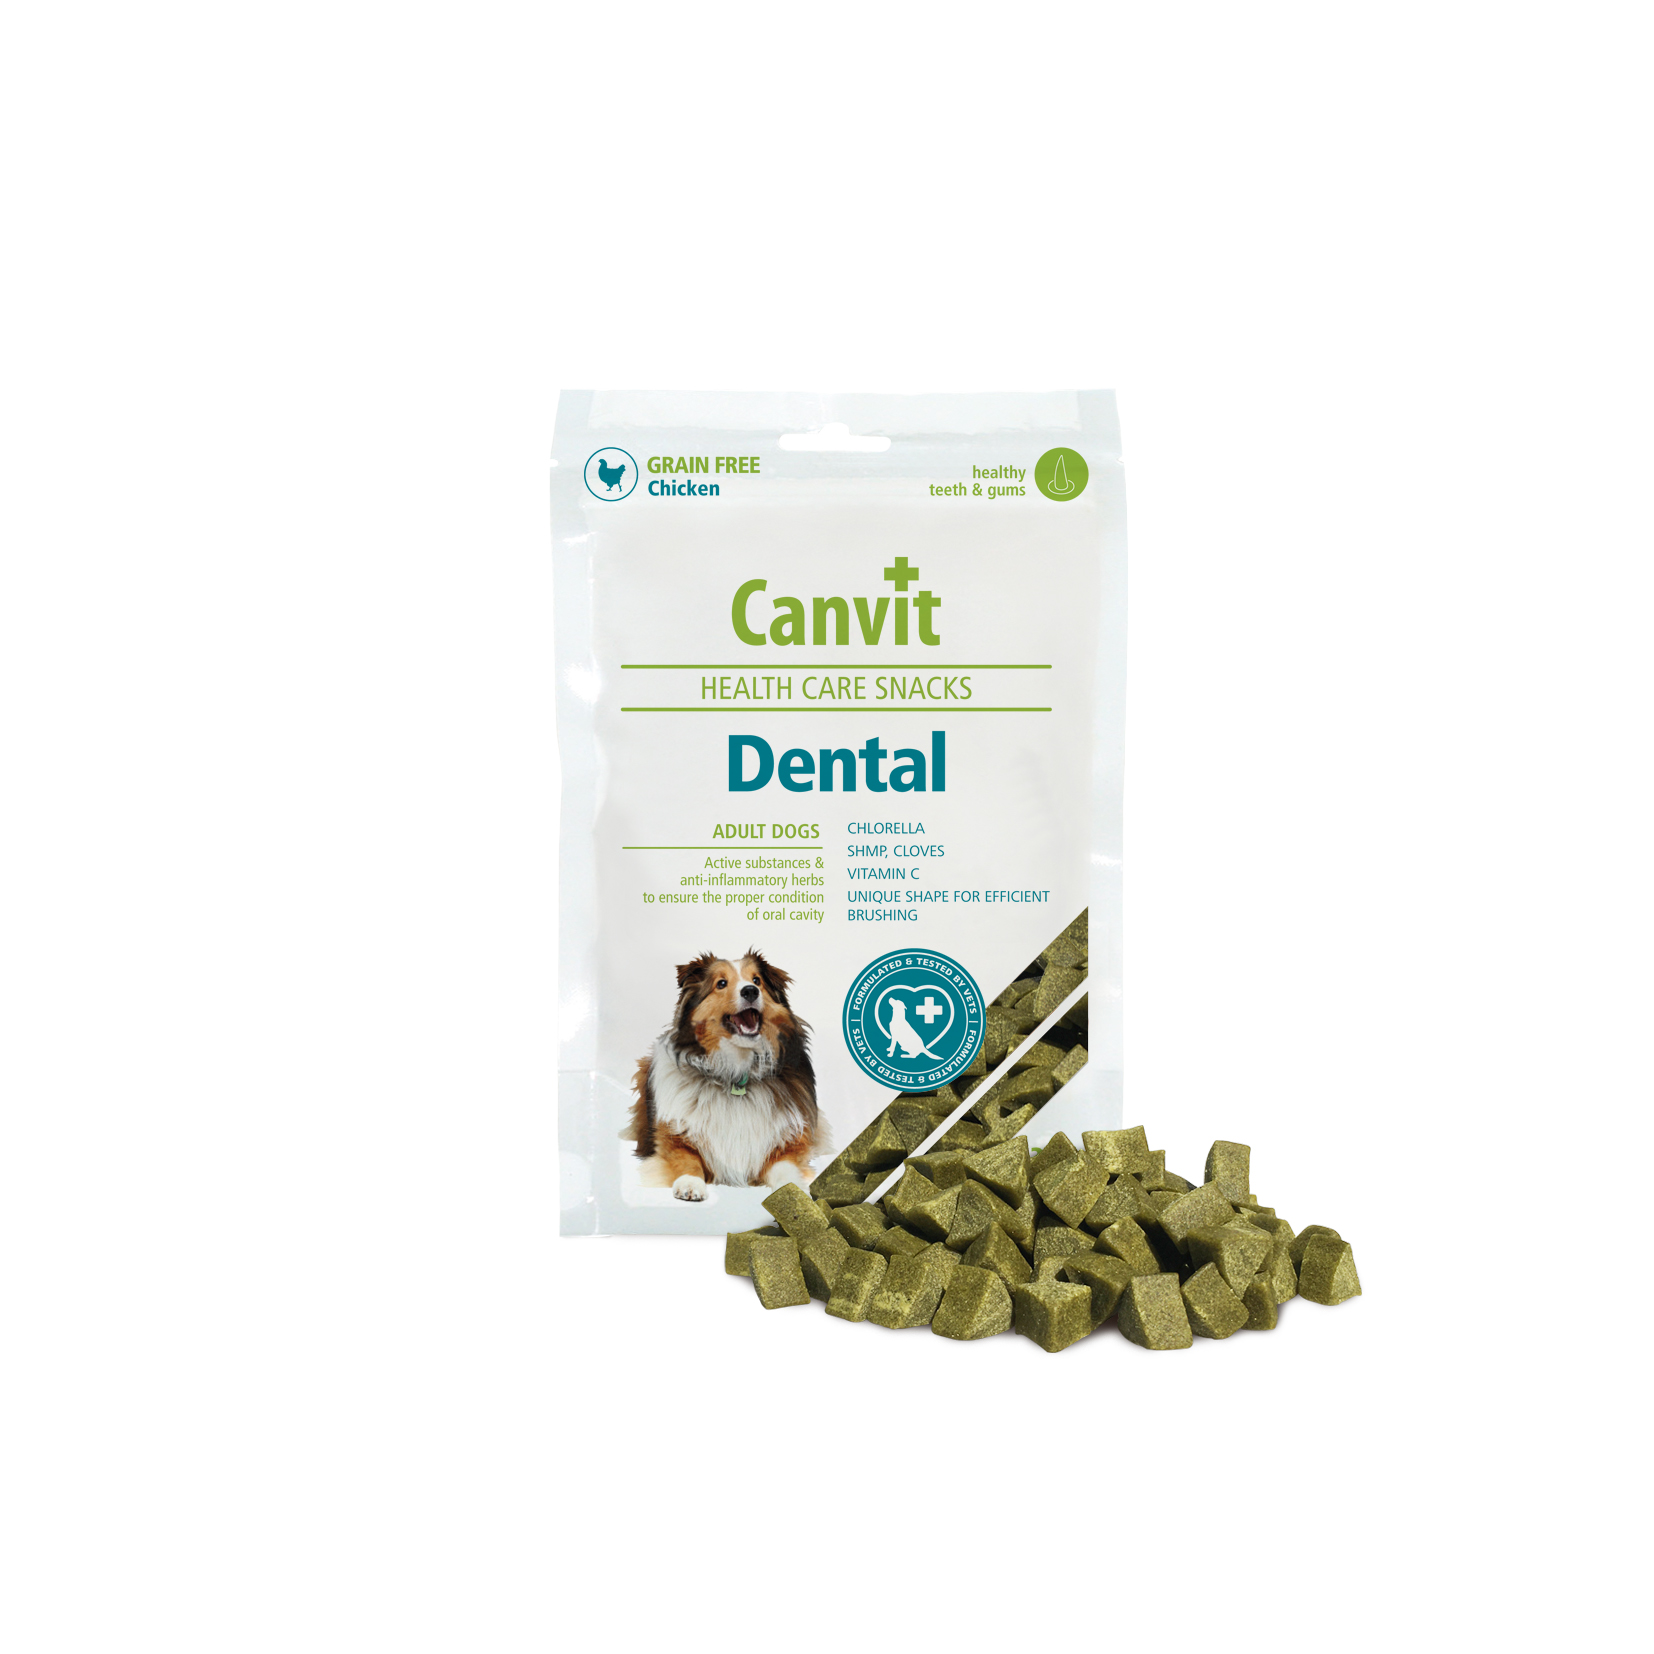 Canvit Dental Snacks 200g